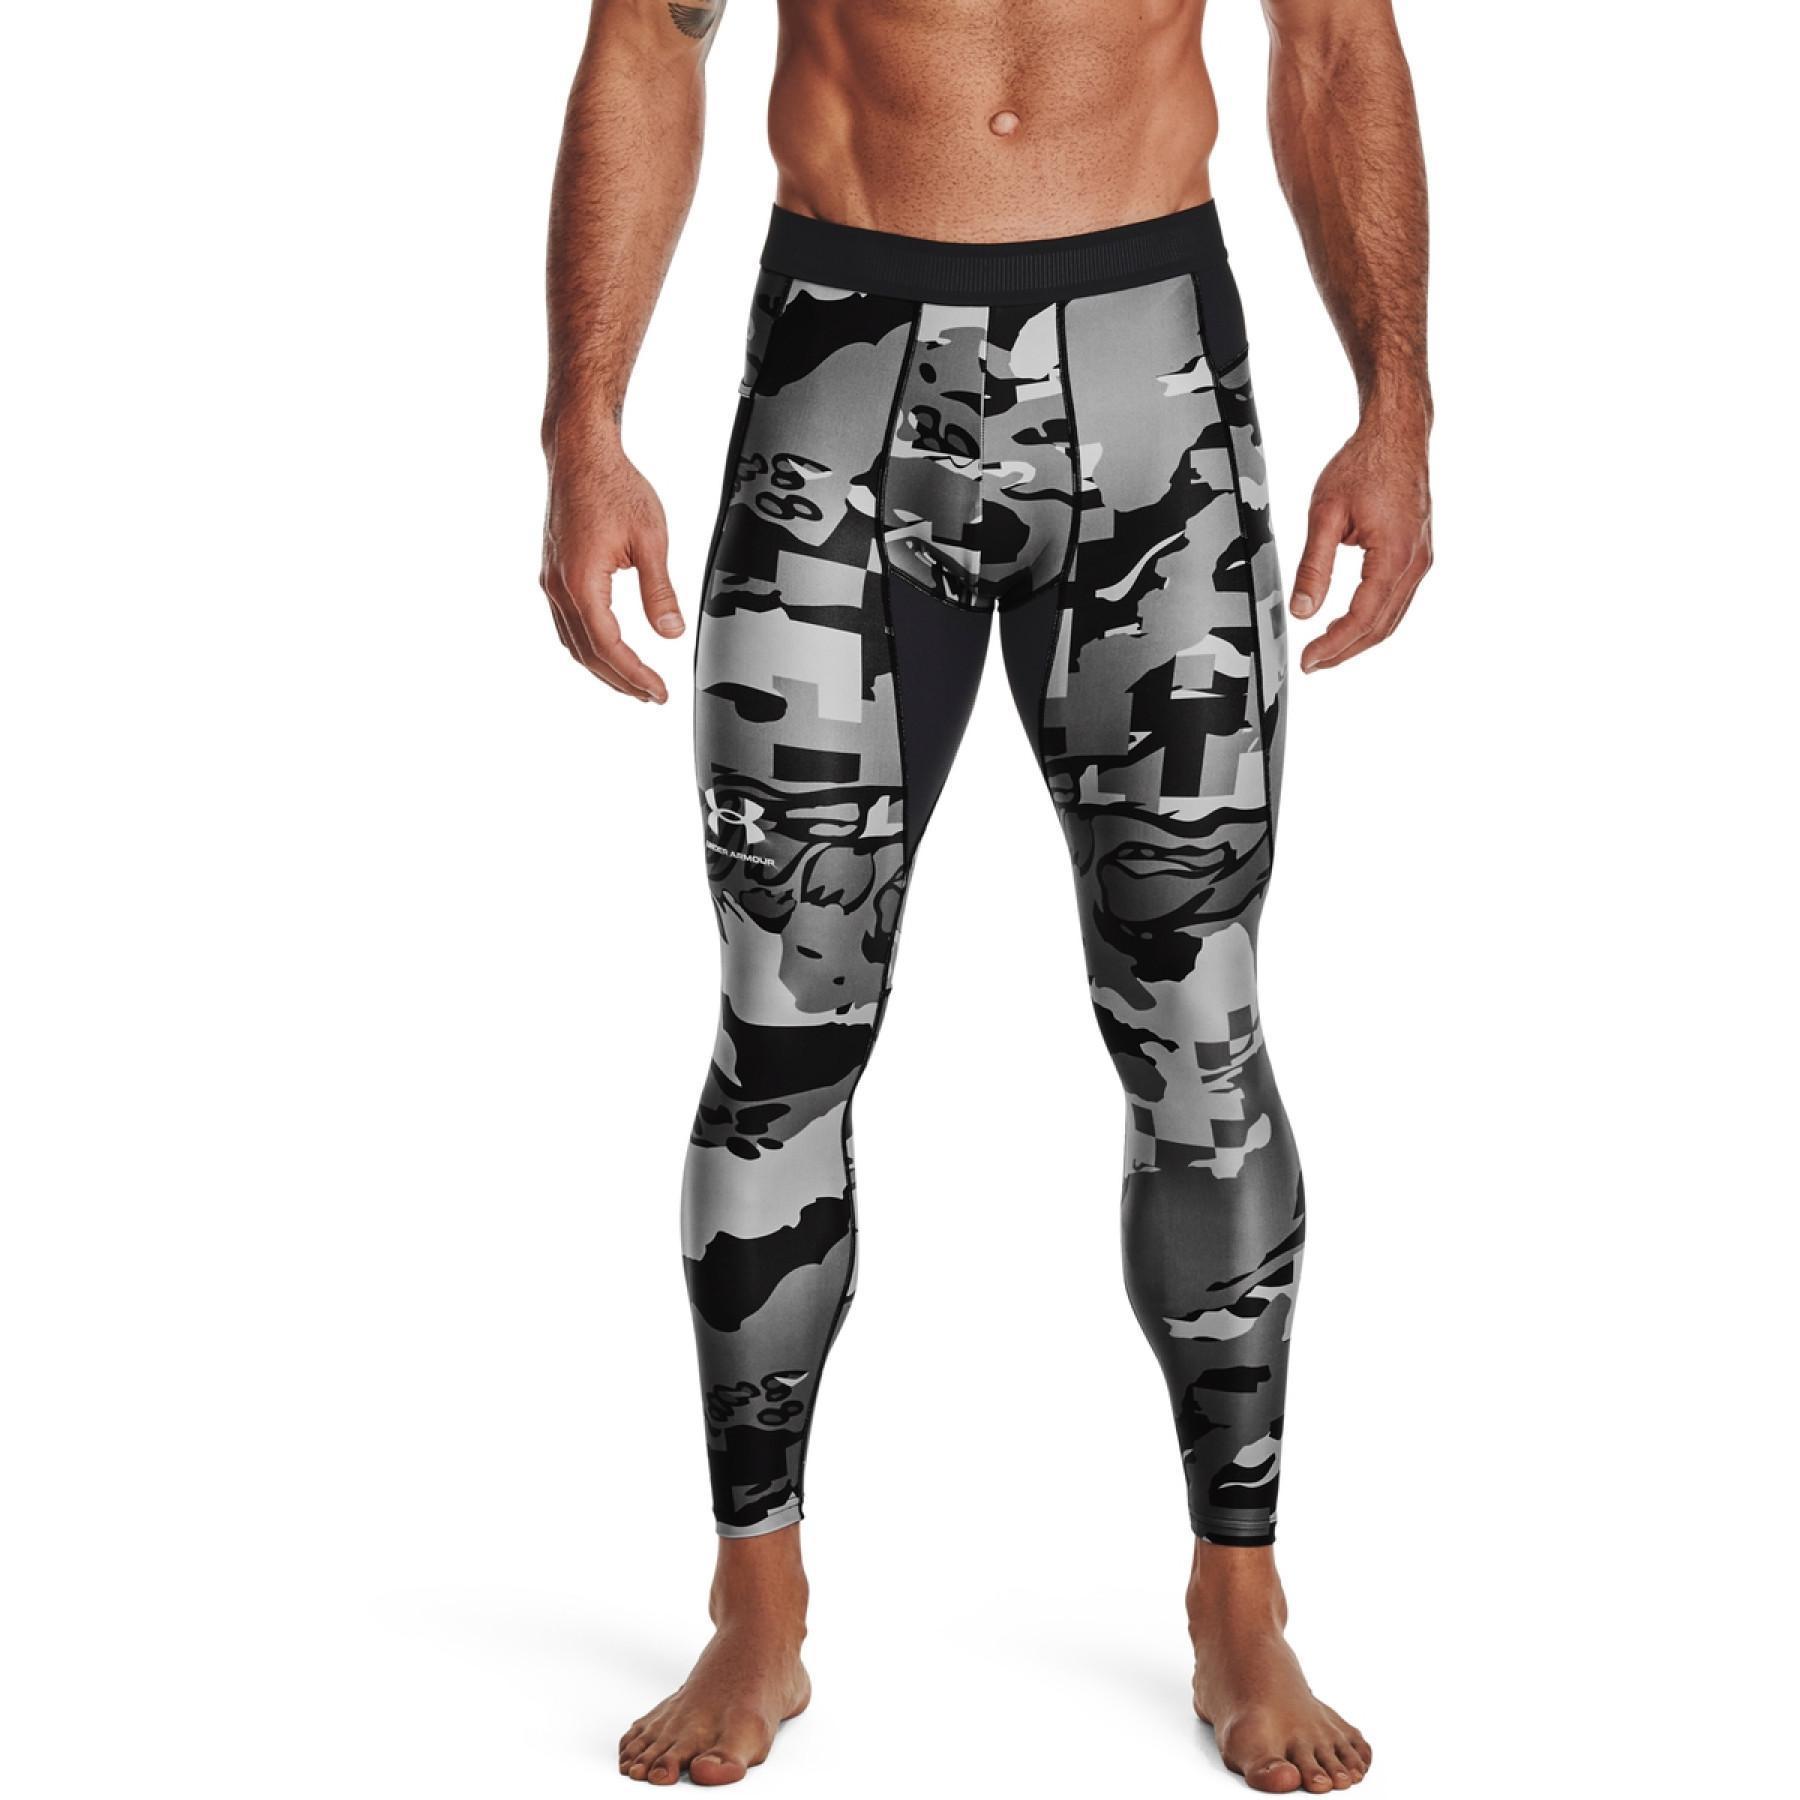 pantalon Nouveau Homme Compression Tight athleticbase Layer Under Armour Peau Fit Chemise 